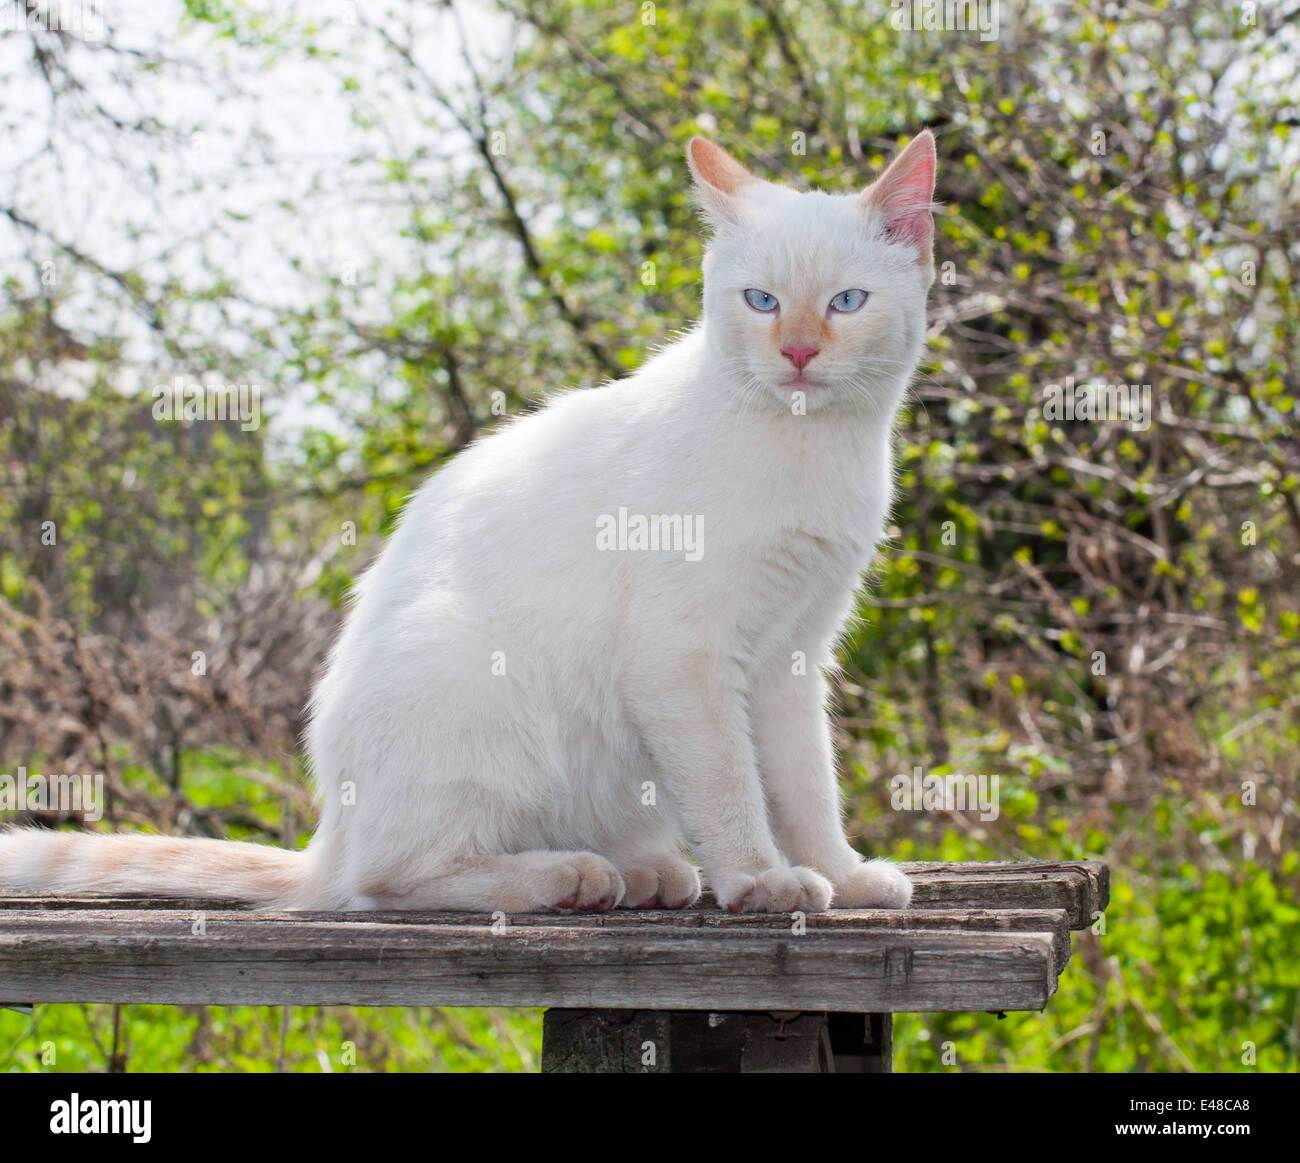 Un animal poilu blanc portrait chat animal nature jardin bleu en plein air les jeunes adultes cheveux visage yeux personne mars Banque D'Images